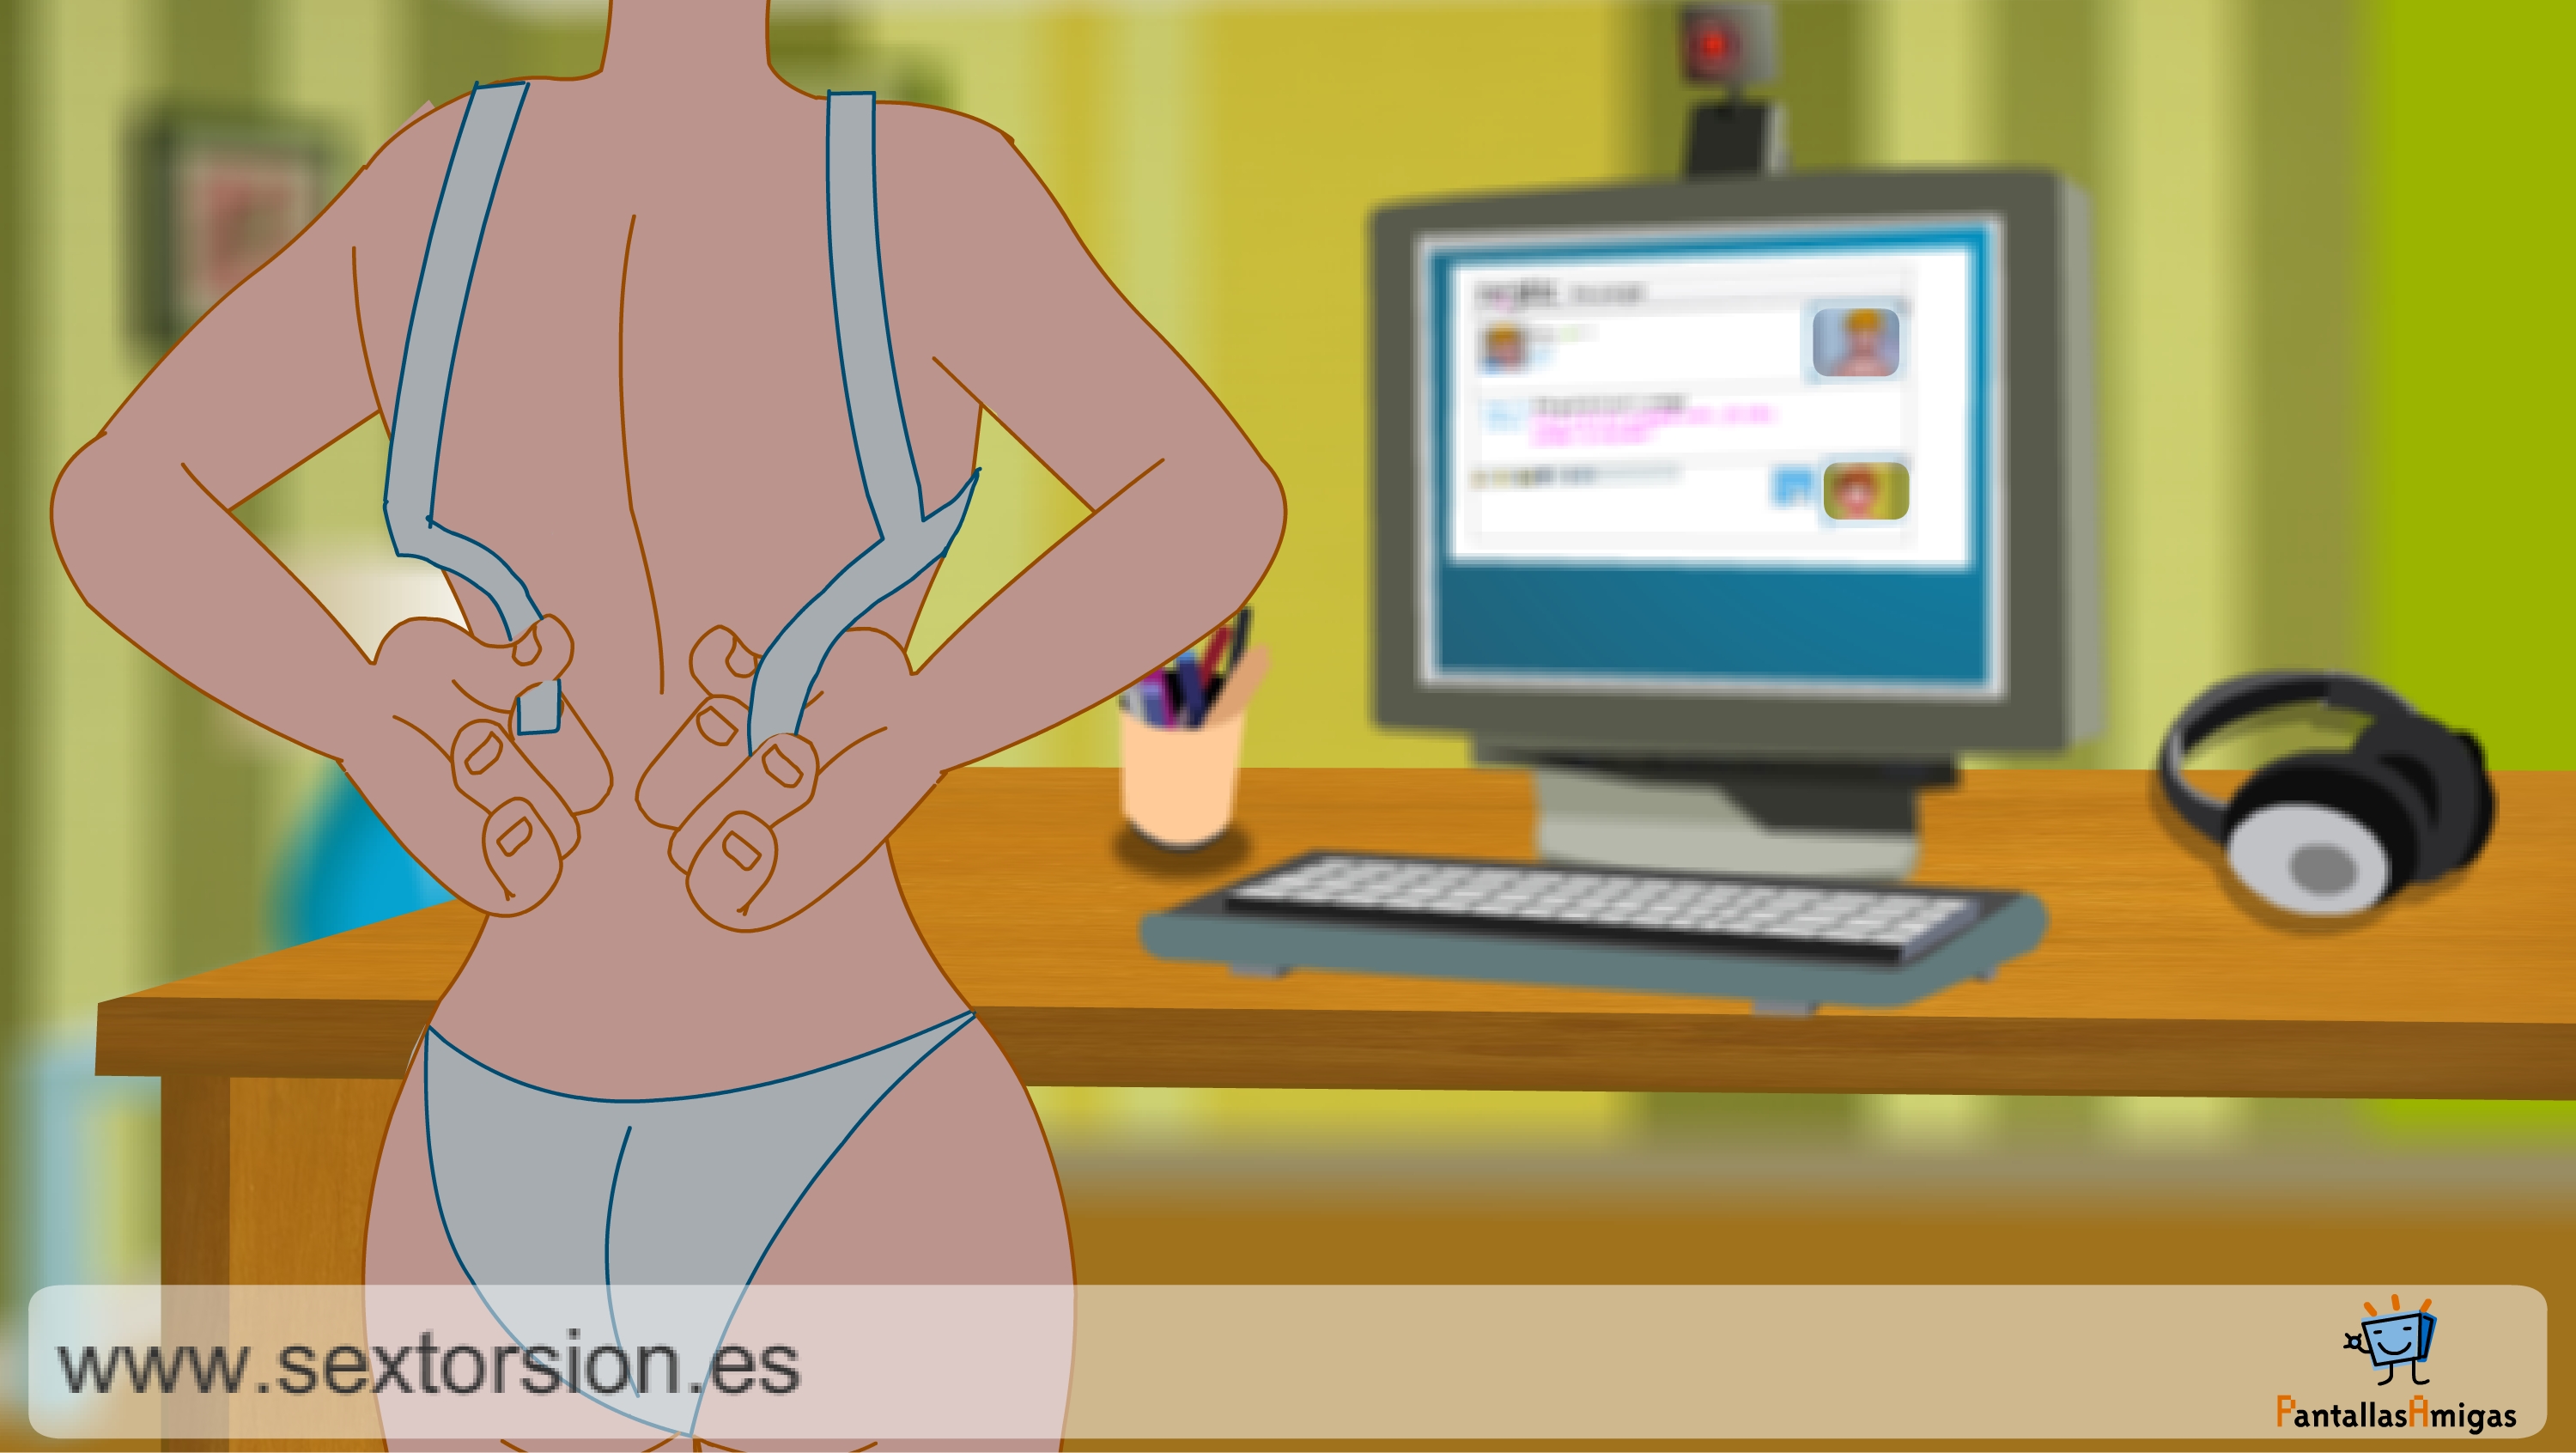 Captura de animación sobre la sextorsión. COPYRIGHT EDEX CRC / PantallasAmigas